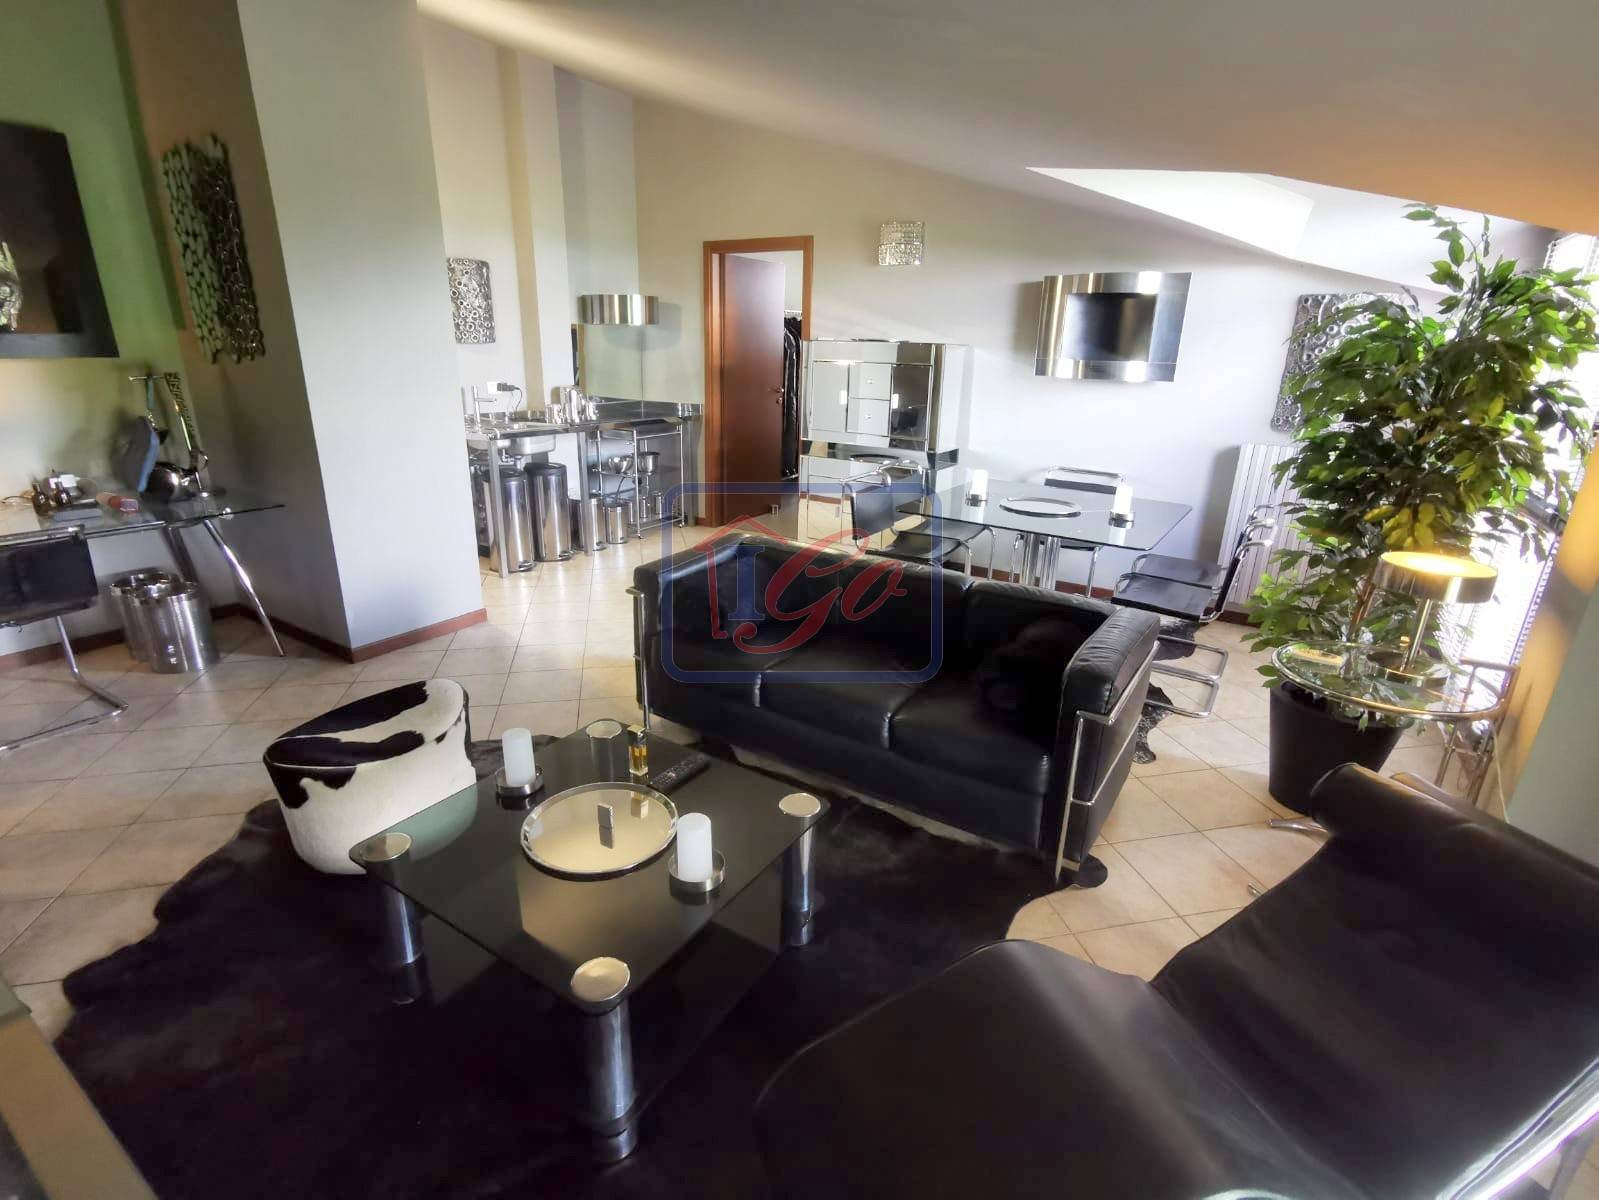 Appartamento in vendita a Truccazzano, 2 locali, prezzo € 190.000 | PortaleAgenzieImmobiliari.it